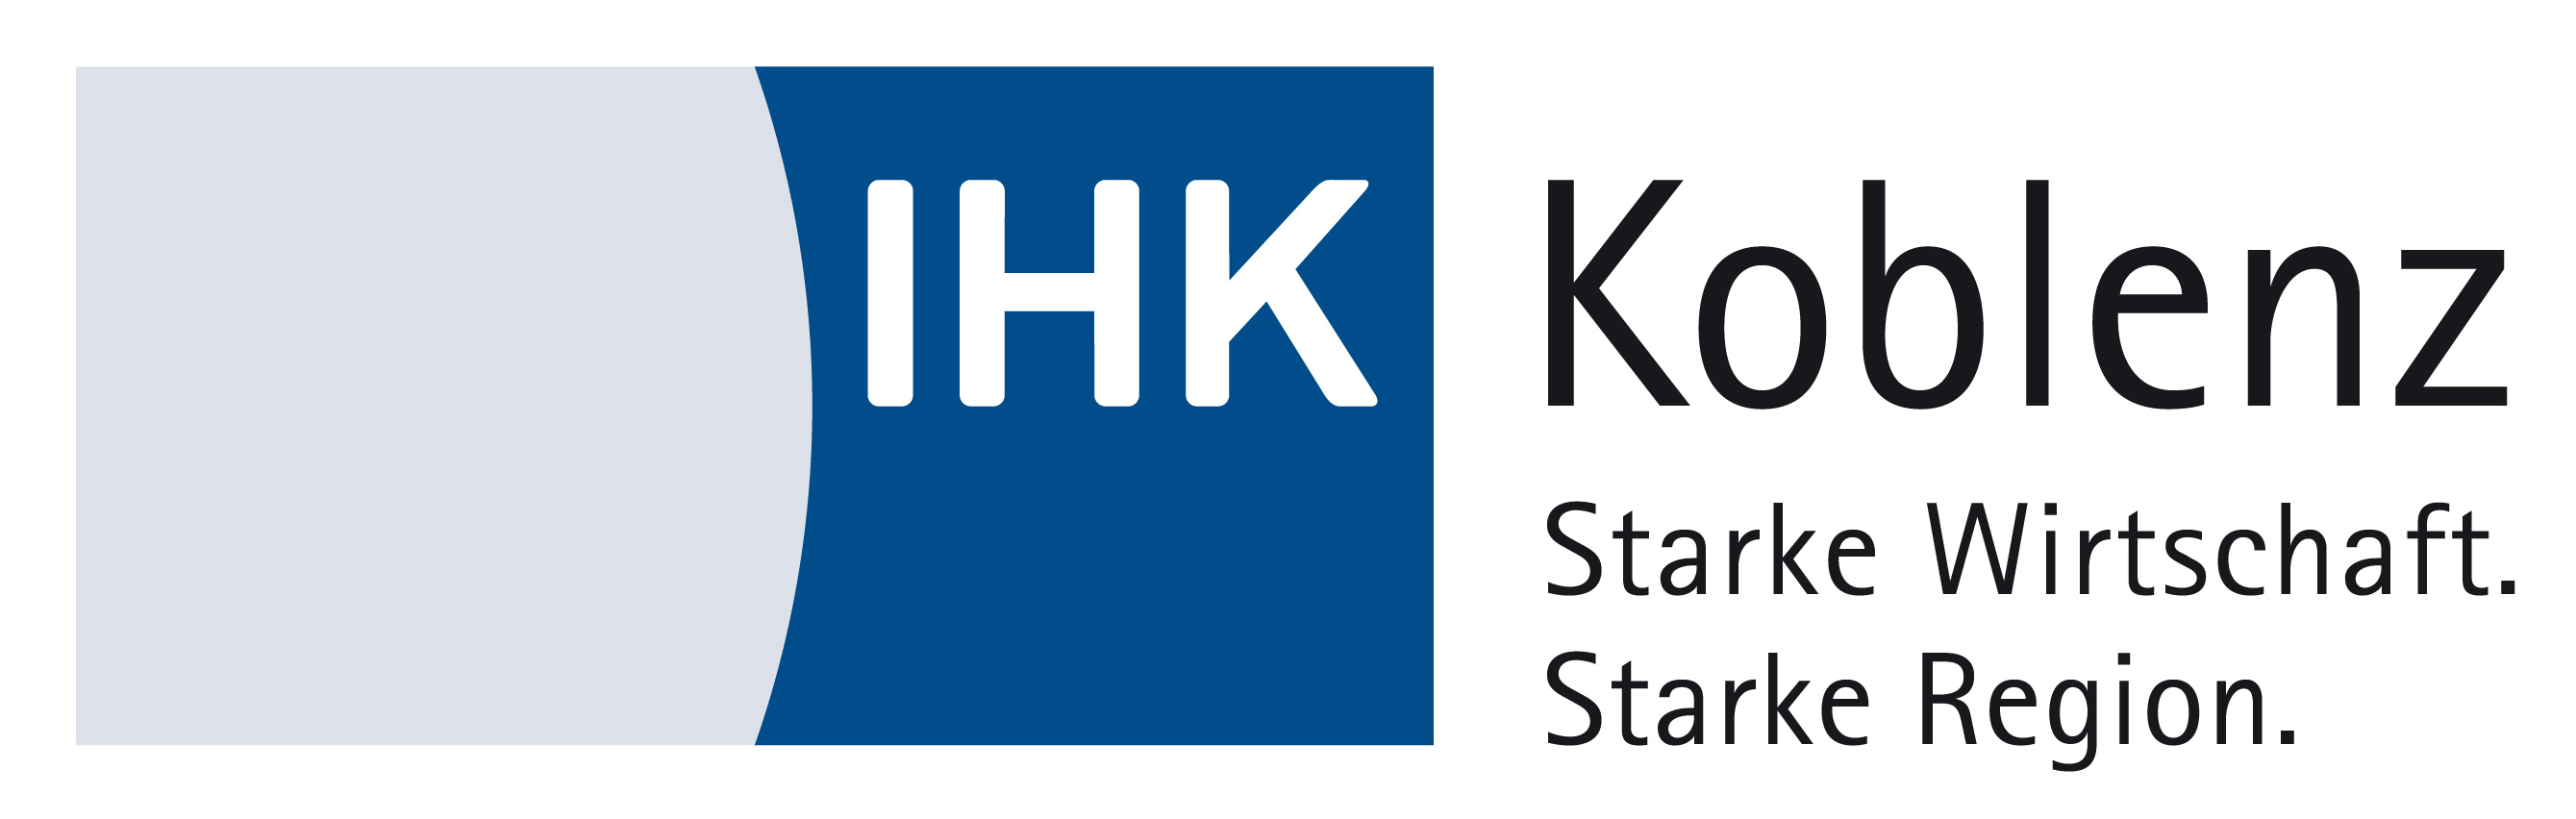 IHK-Akademie Koblenz e. V. 